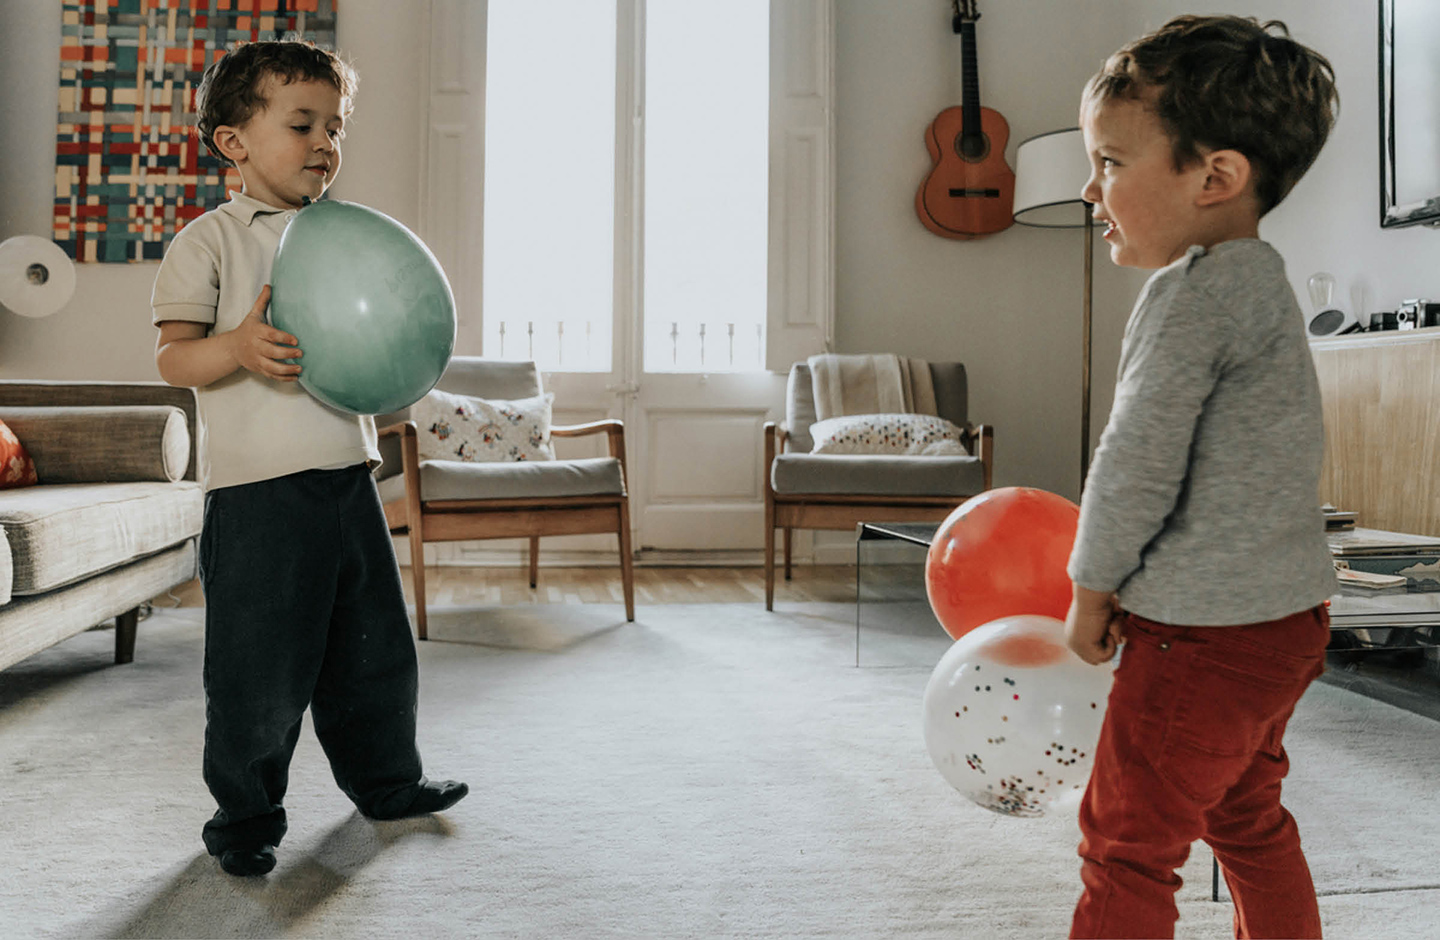 Zwei kleine Jungs spielen im Wohnzimmer mit Luftballons